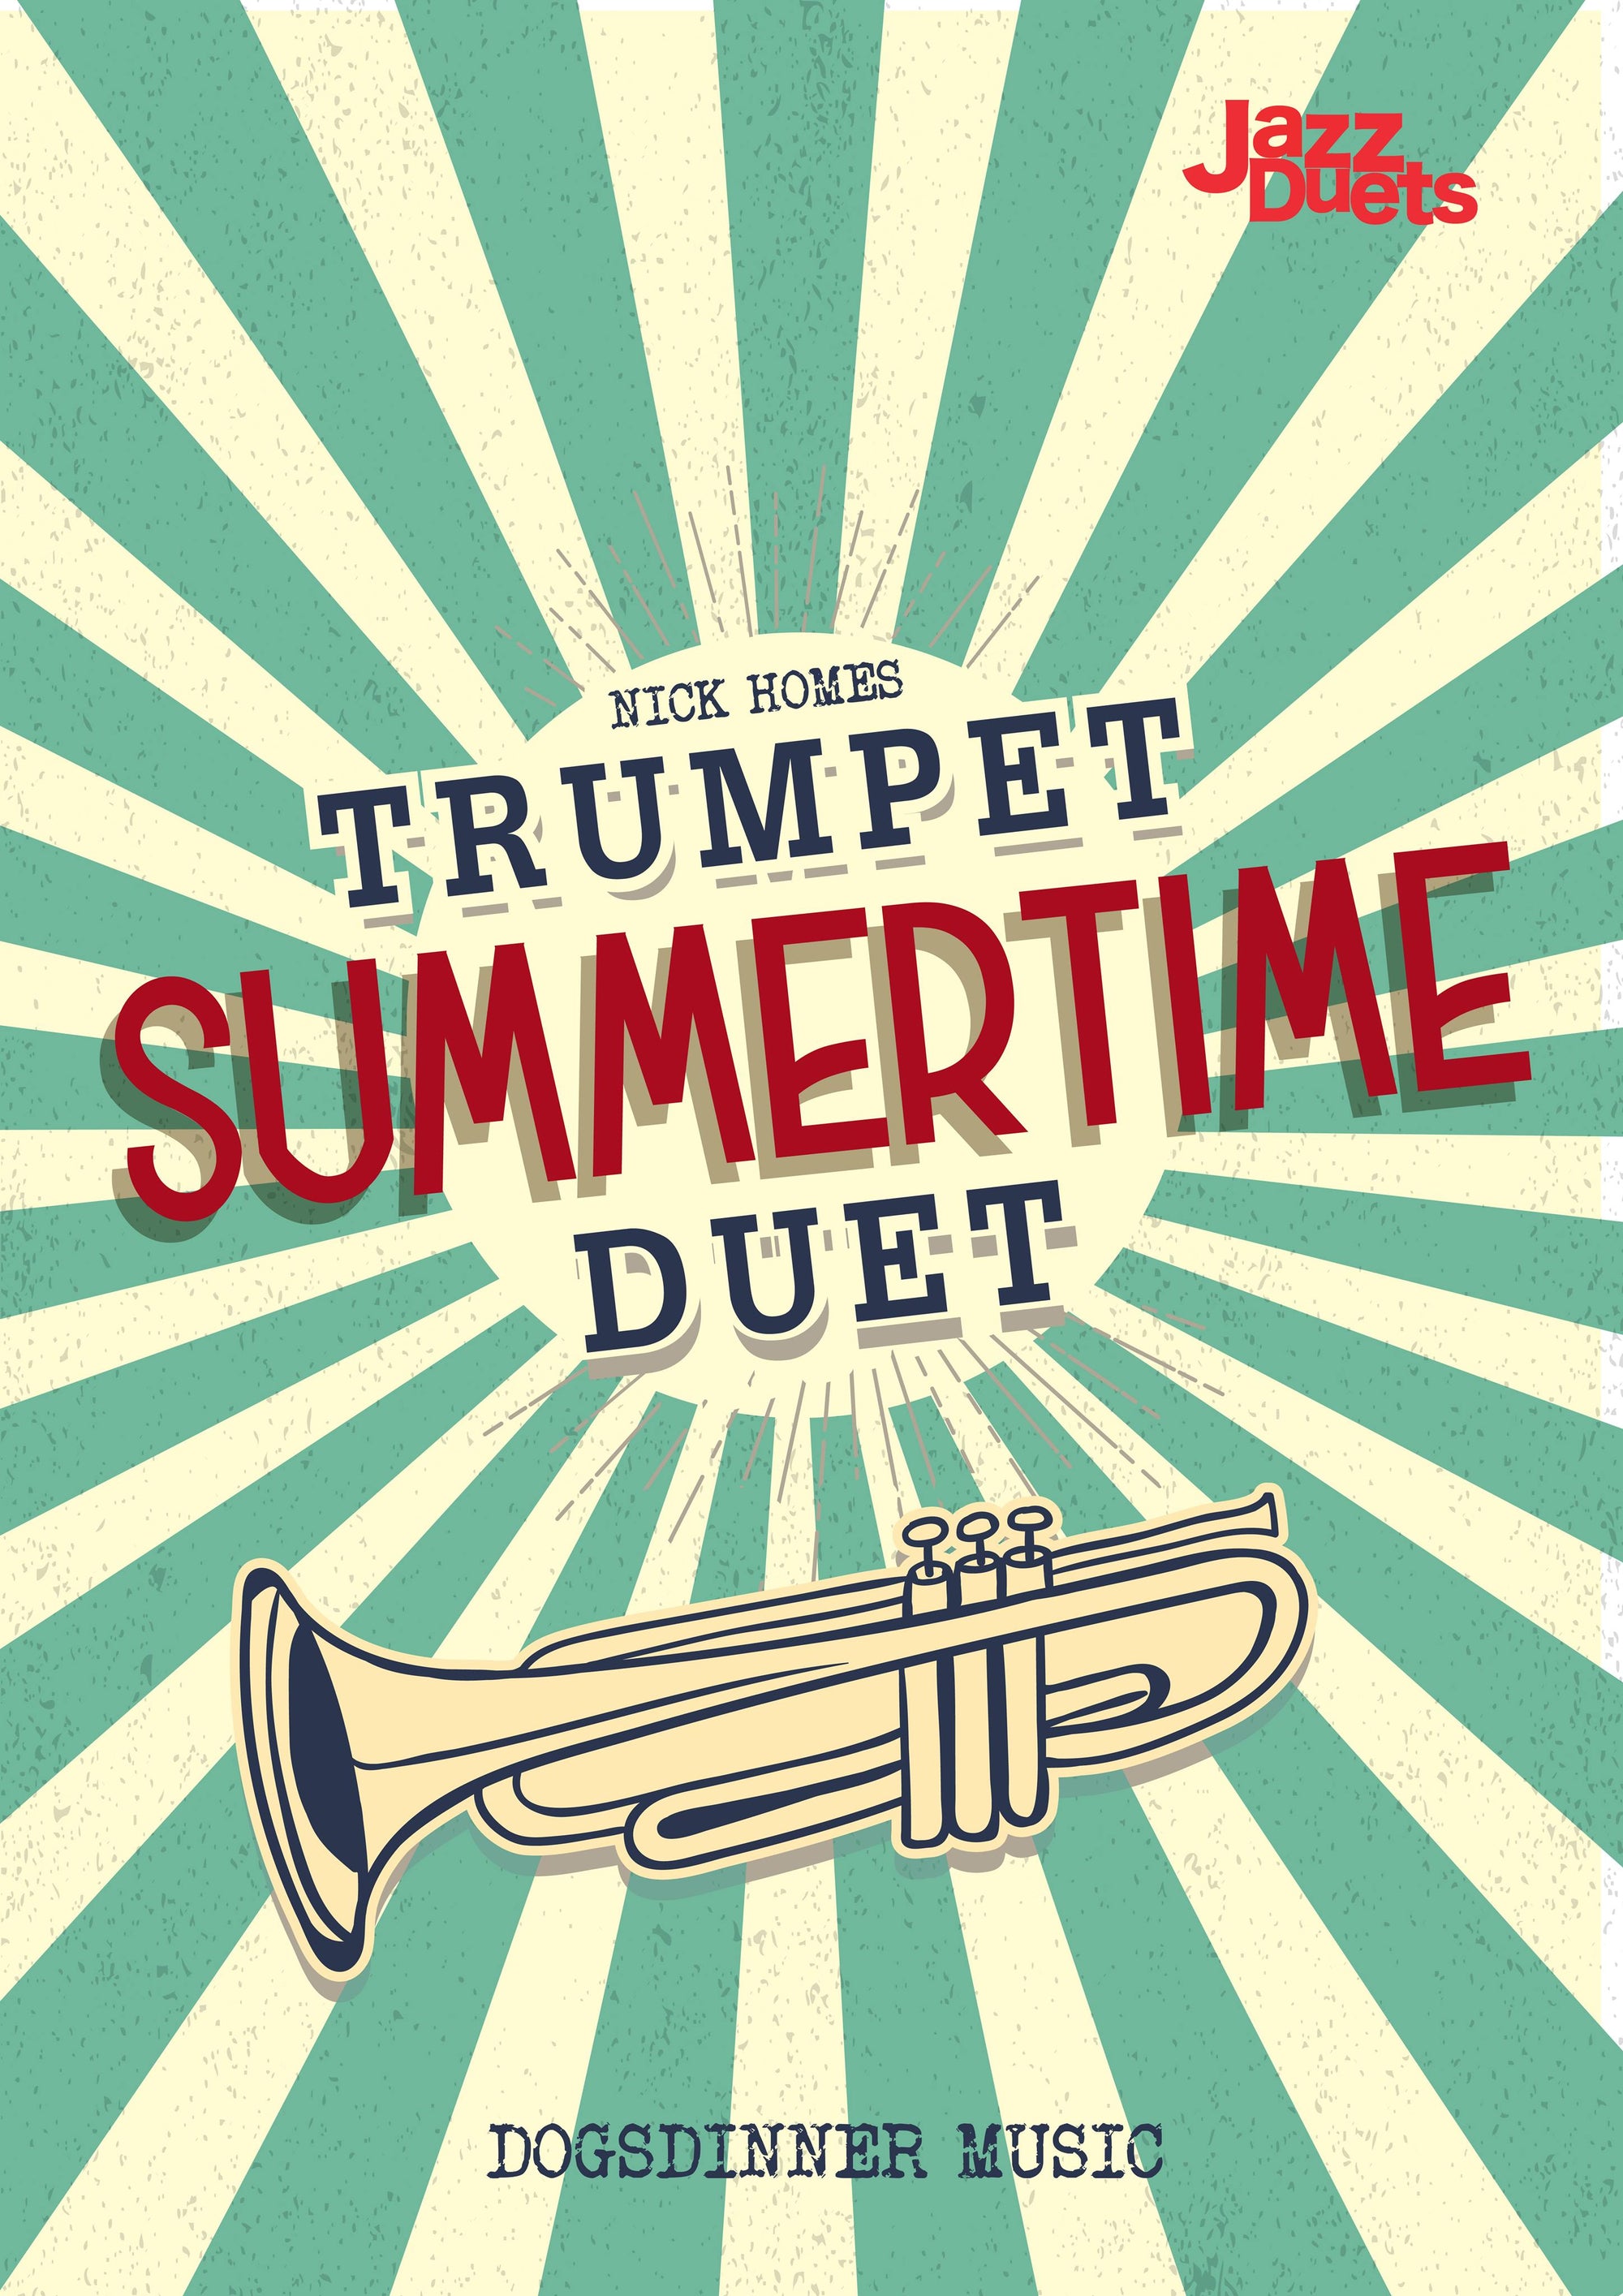 Summertime Trumpet Duet